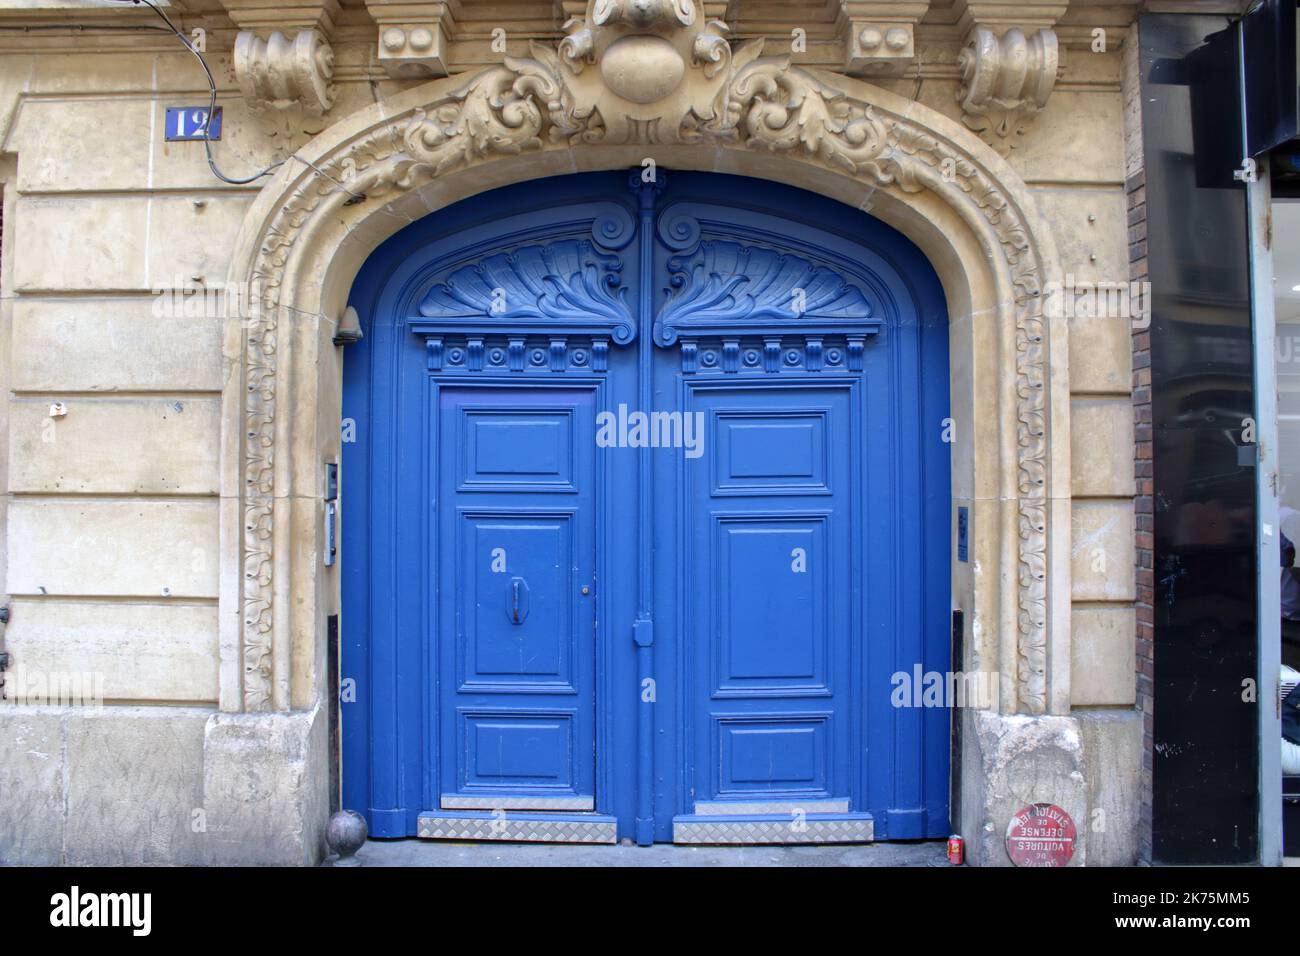 Une belle porte en bois bleu et une grande entrée située dans la rue des Lavandières Sainte-Oportune, dans le 1st arrondissement de Paris France. Banque D'Images